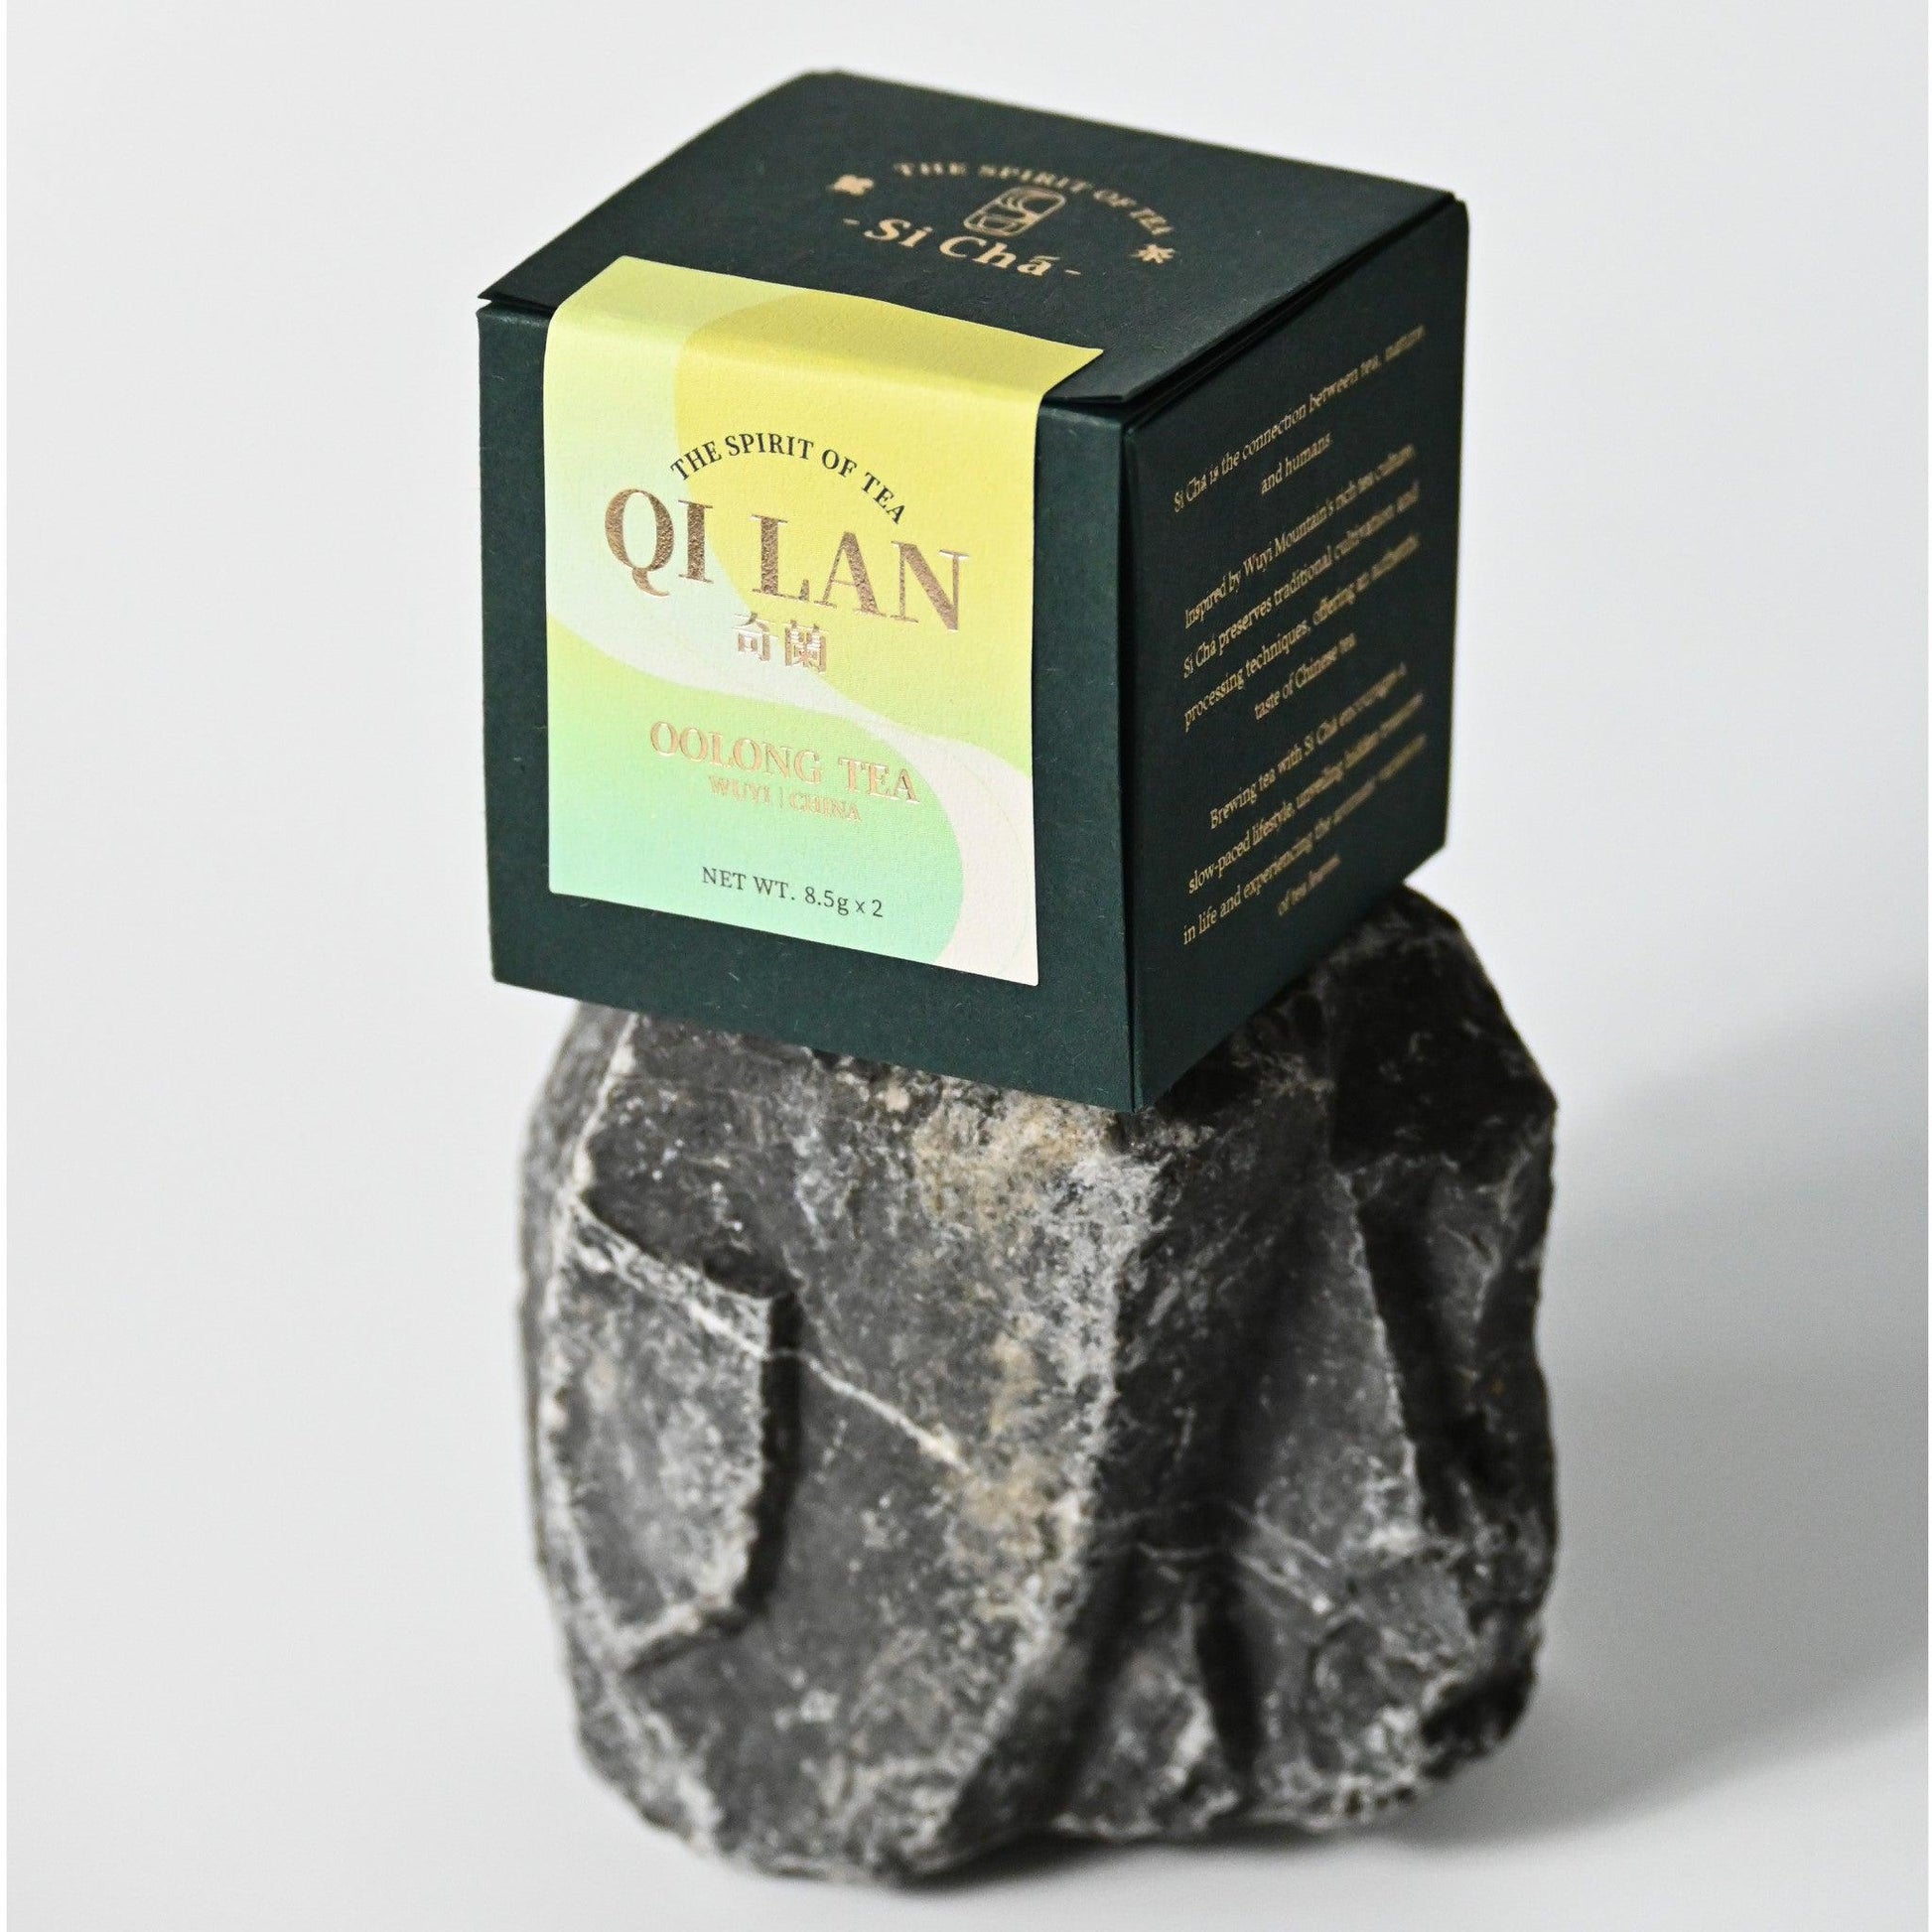 Tea Box of Si Chá's Qi Lan Oolong tea